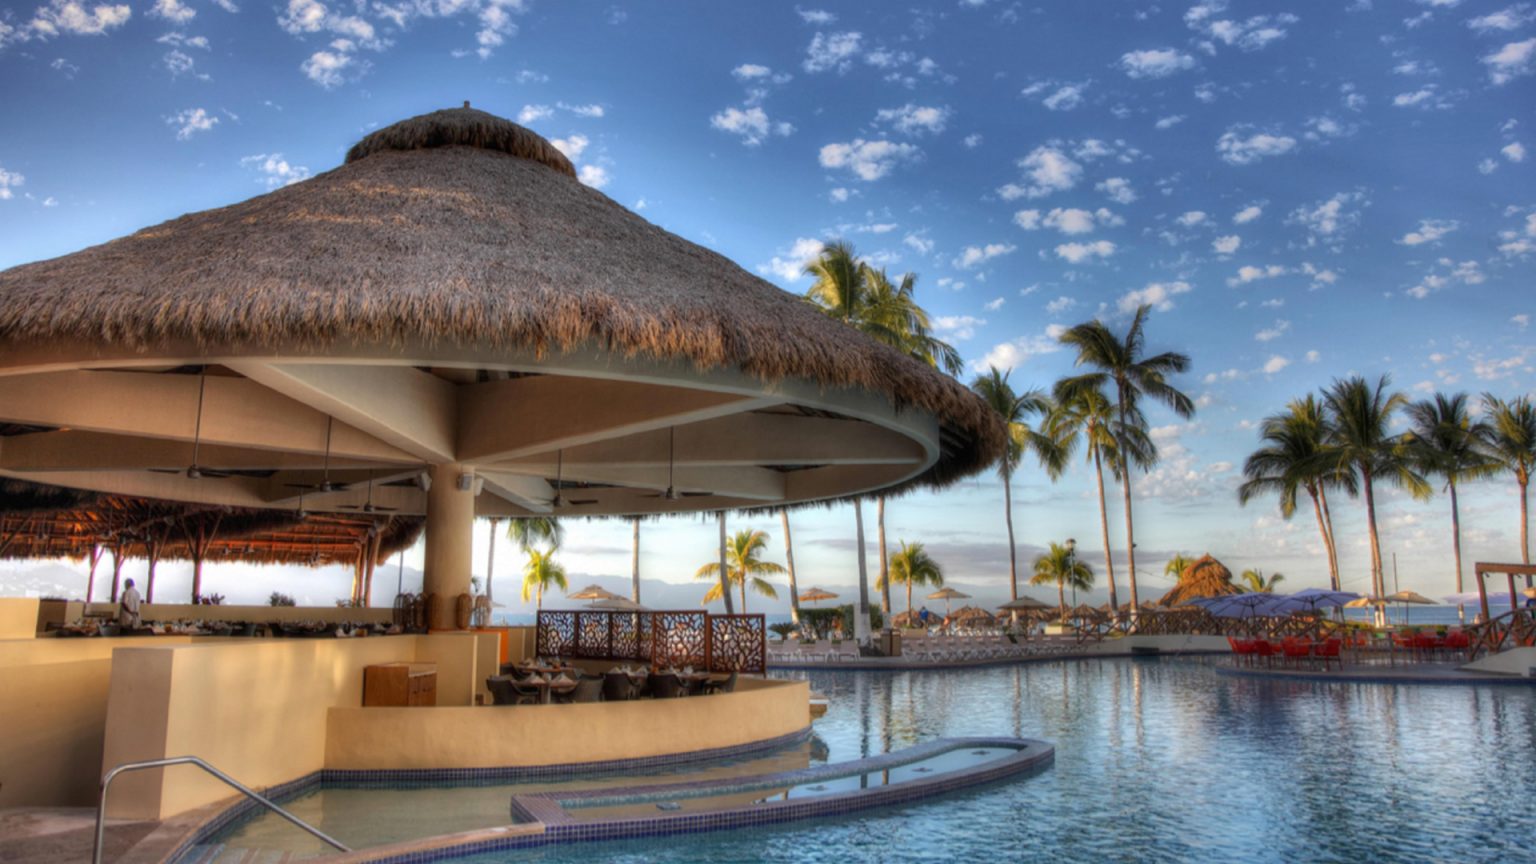 royal-holiday-hotel-resort-vista-restaurant-torre-condomar-sunscape-pvrs-mexico-jalisco-puerto-vallarta-1536x864